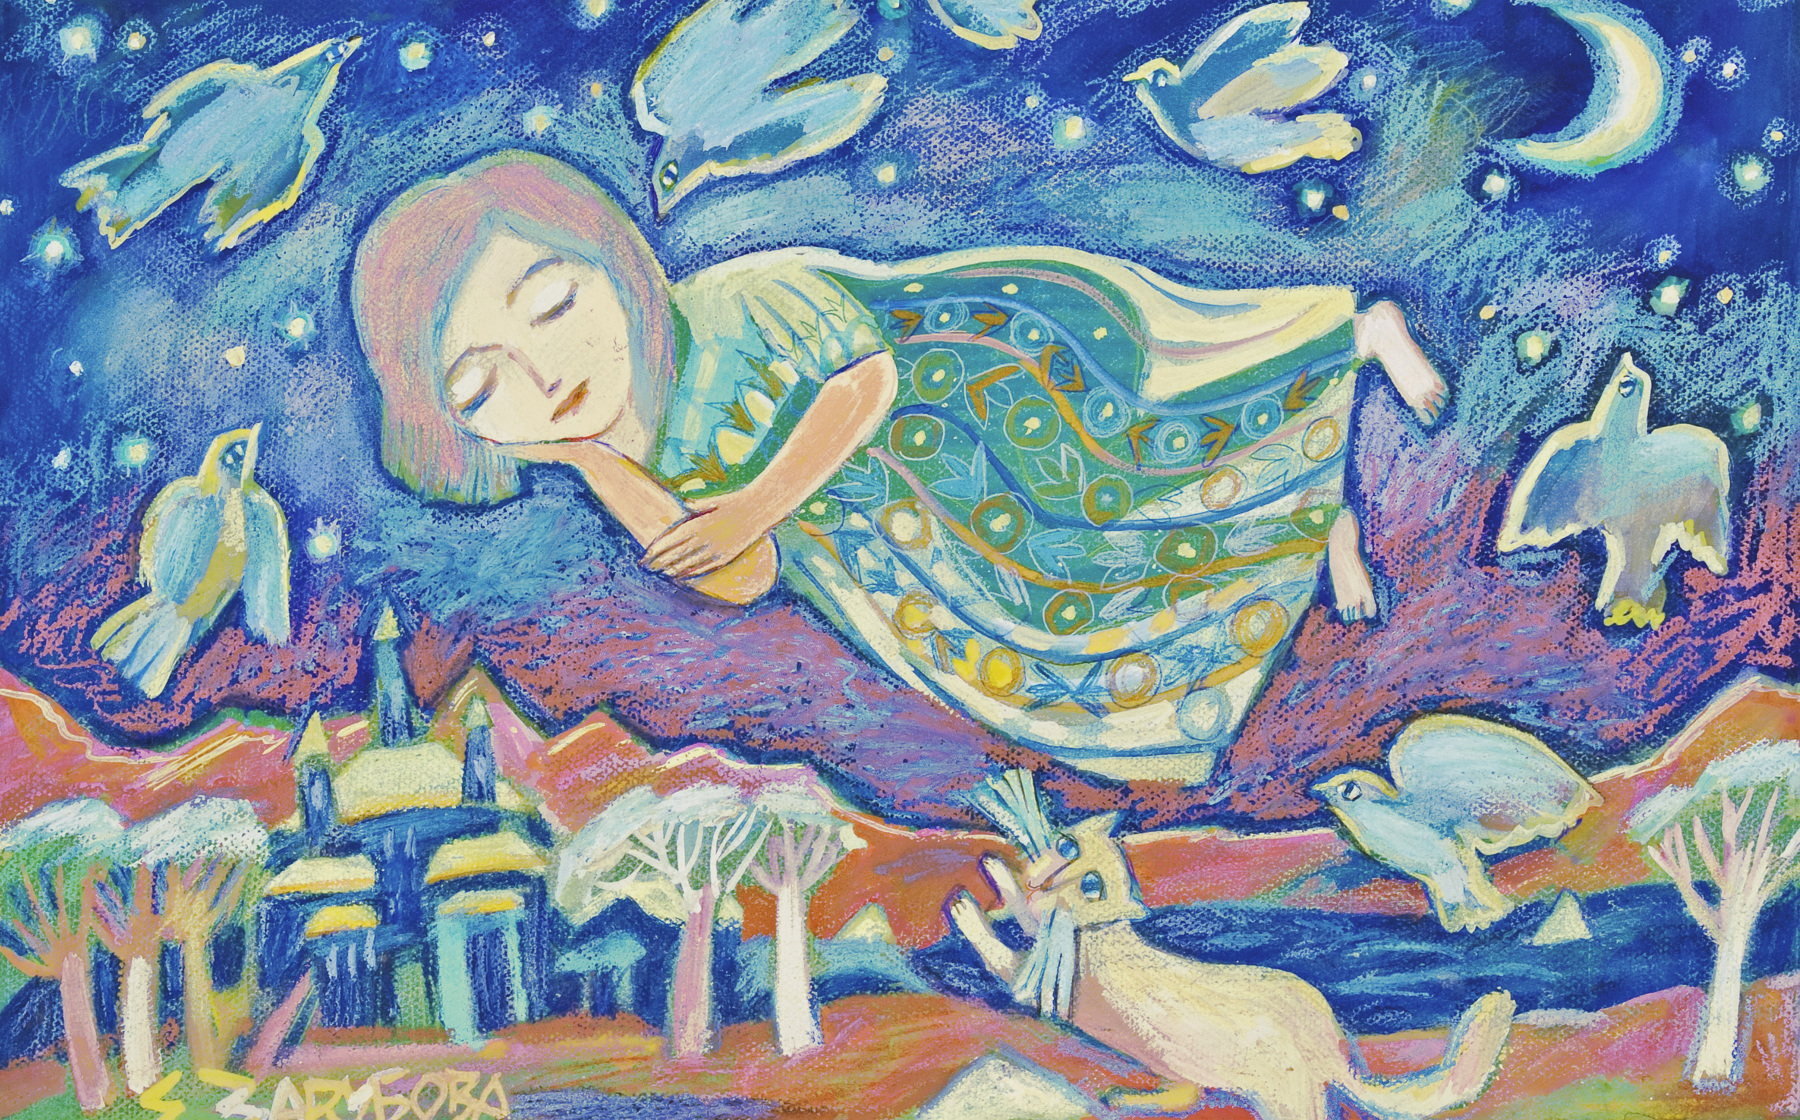    Мир сказки Елены Зарубовой | Полёт во сне